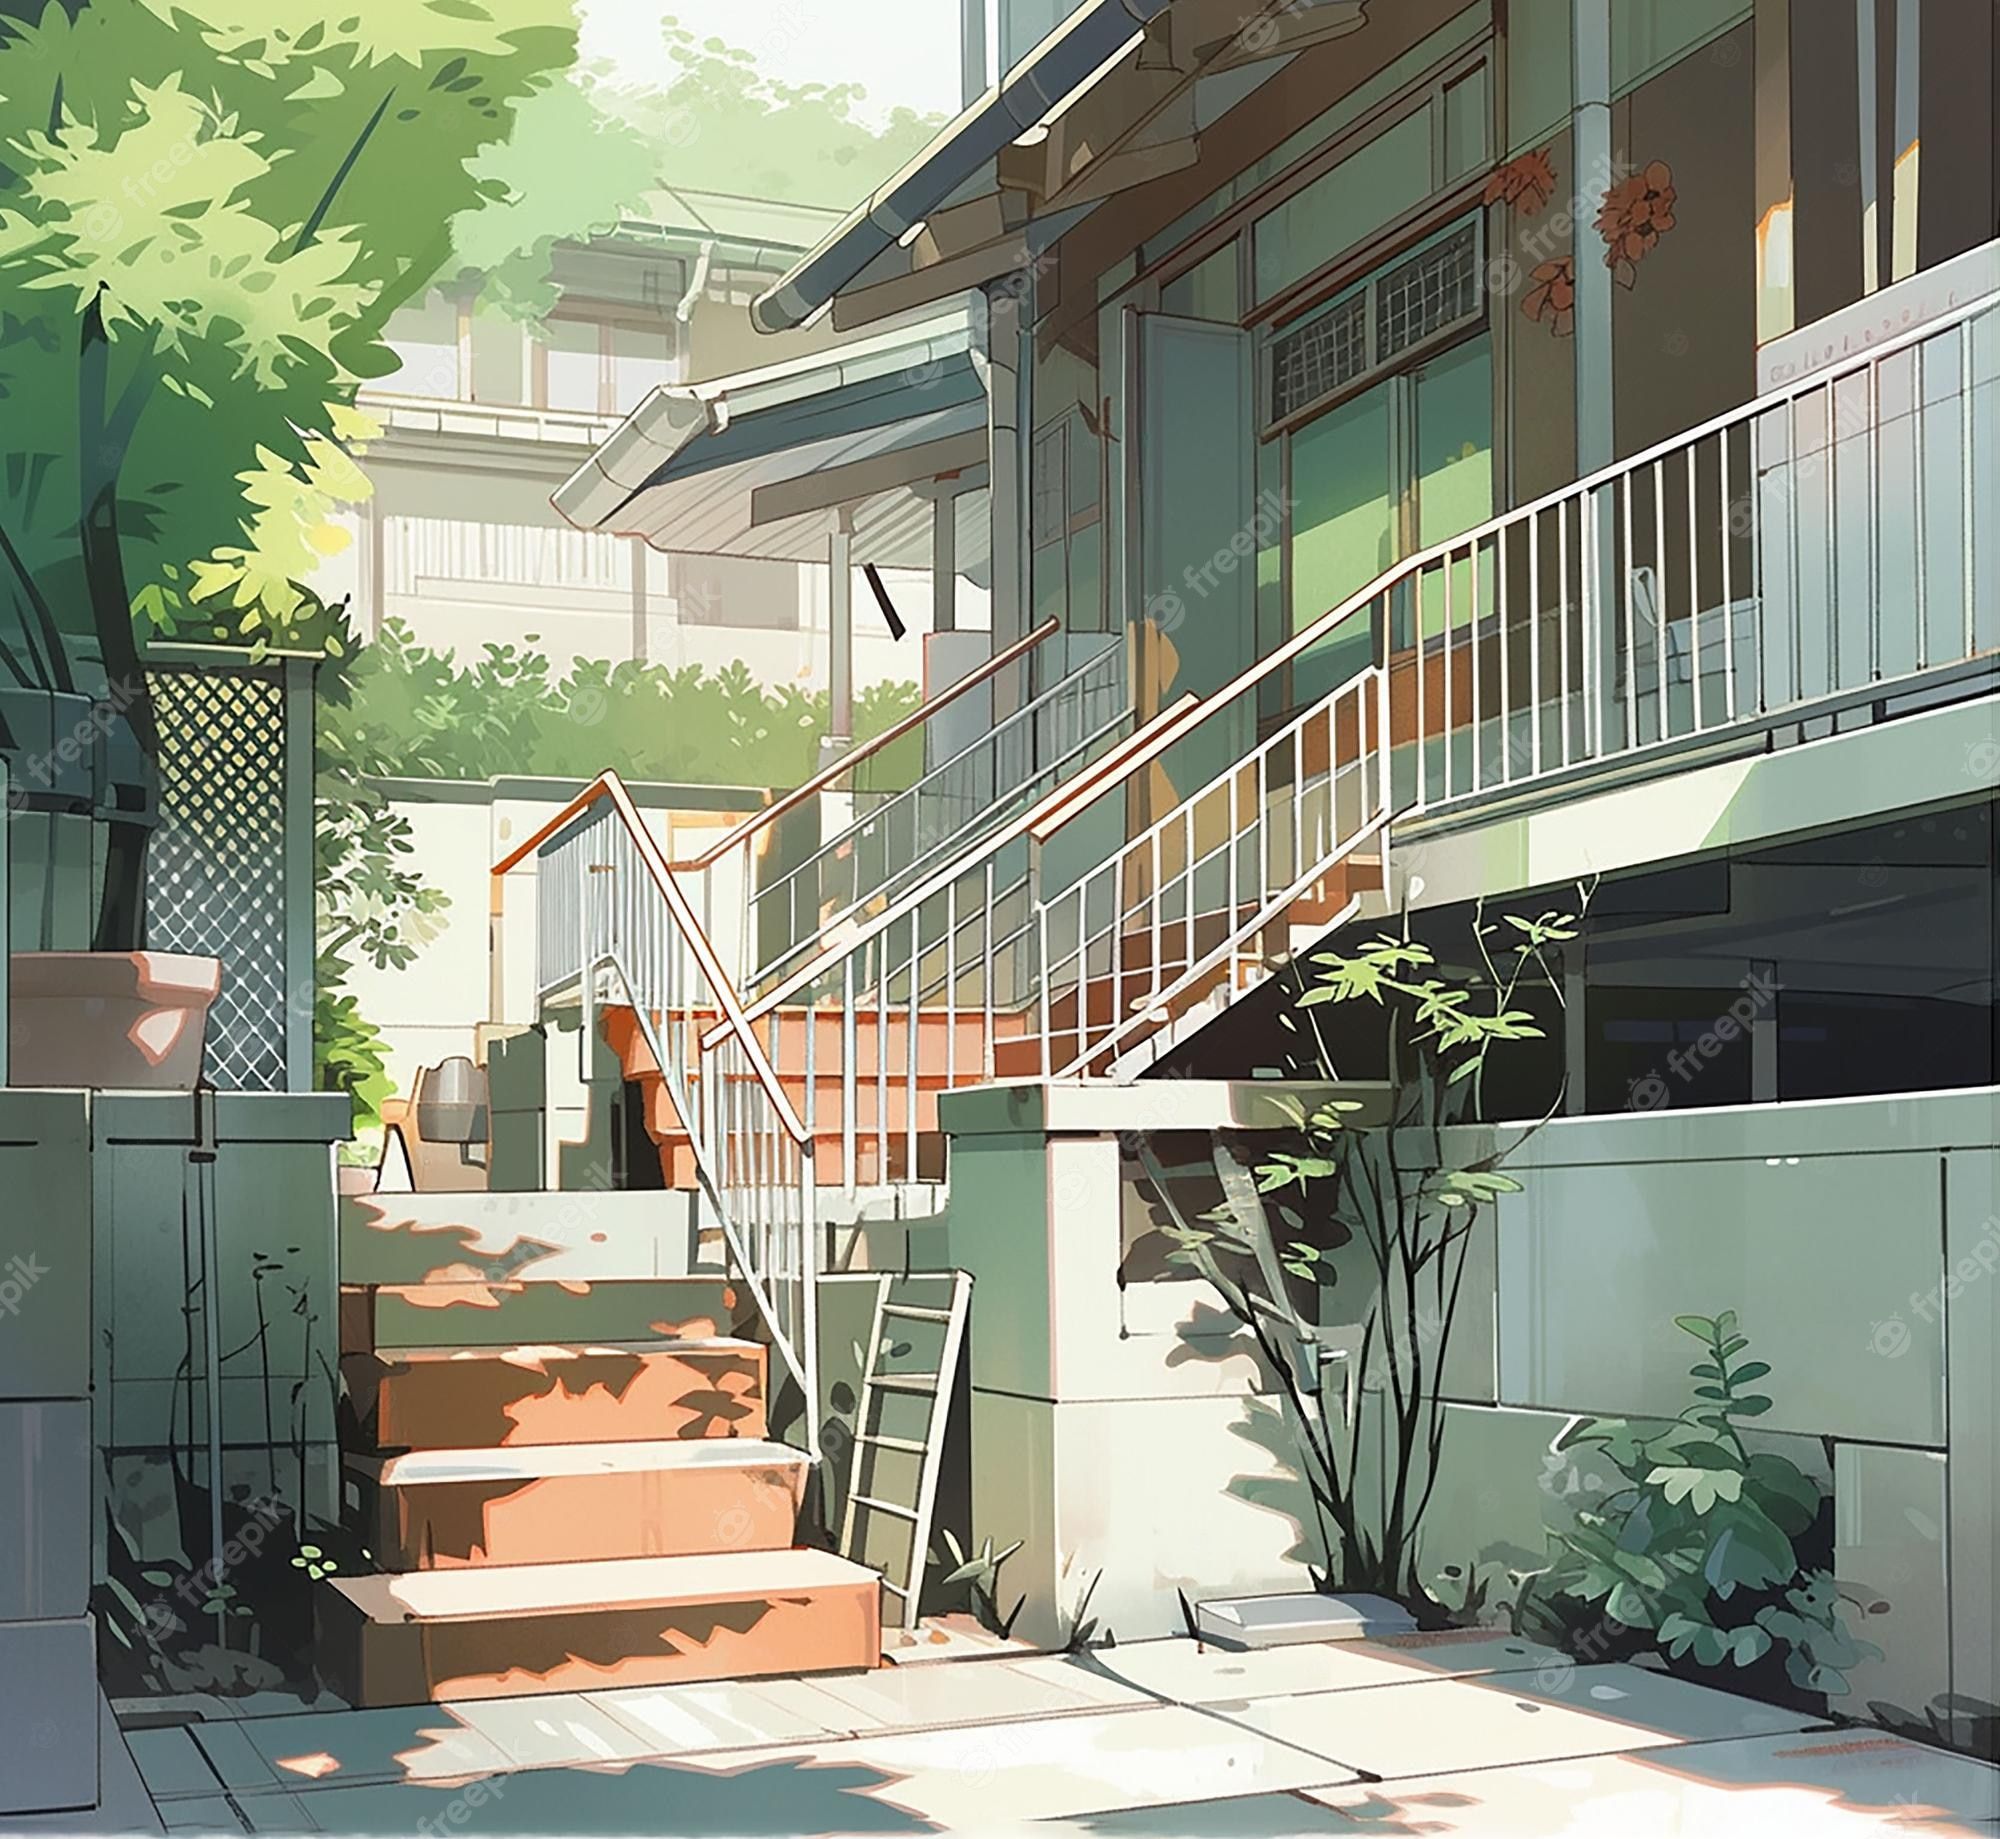  Haus Hintergrundbild 2000x1839. Modernes Haus Mit Treppen Und Pflanzen Im Vordergrund. Hintergrund Im Japanischen Manga Stil